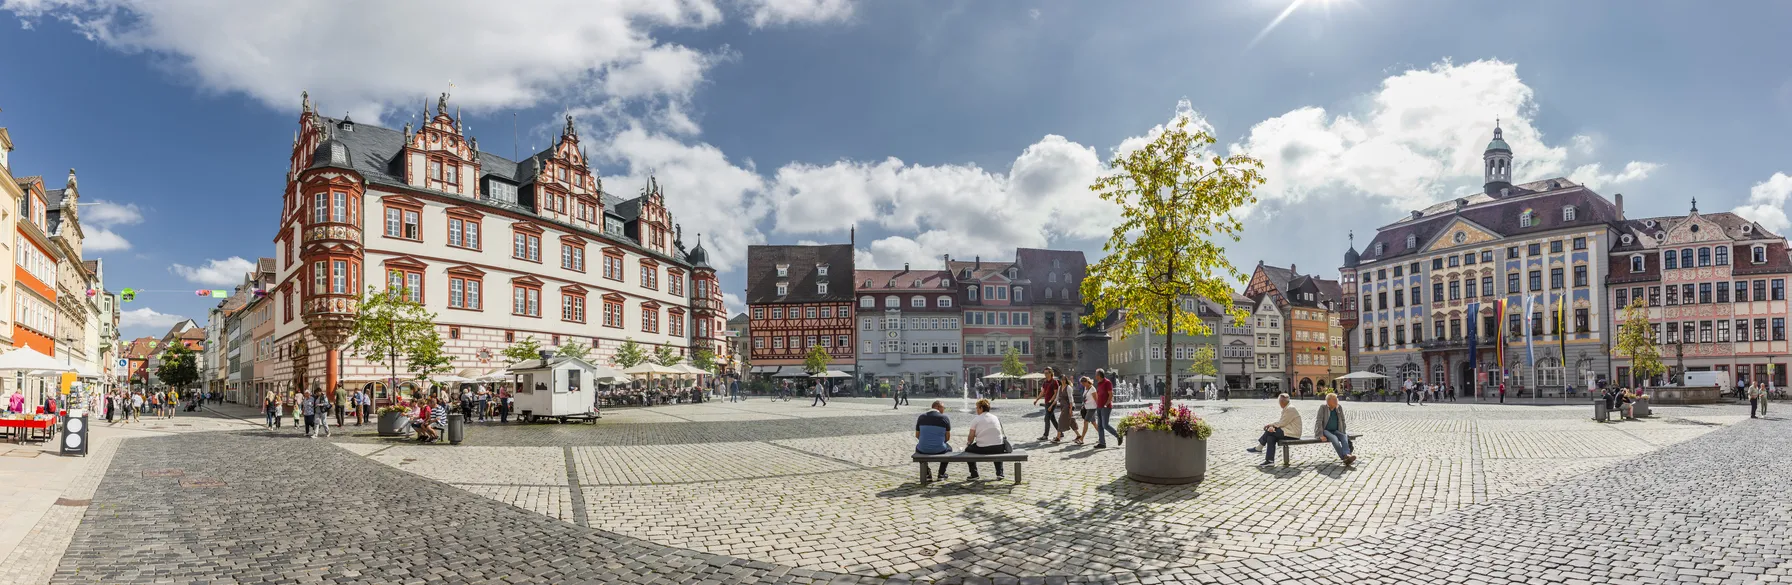 La place du marché (Marktplatz) de Cobourg avec le Stadthaus à trois gâble et l'hôtel de ville (Rathaus) de la fin du xvie siècle. © iStock / by-studio 